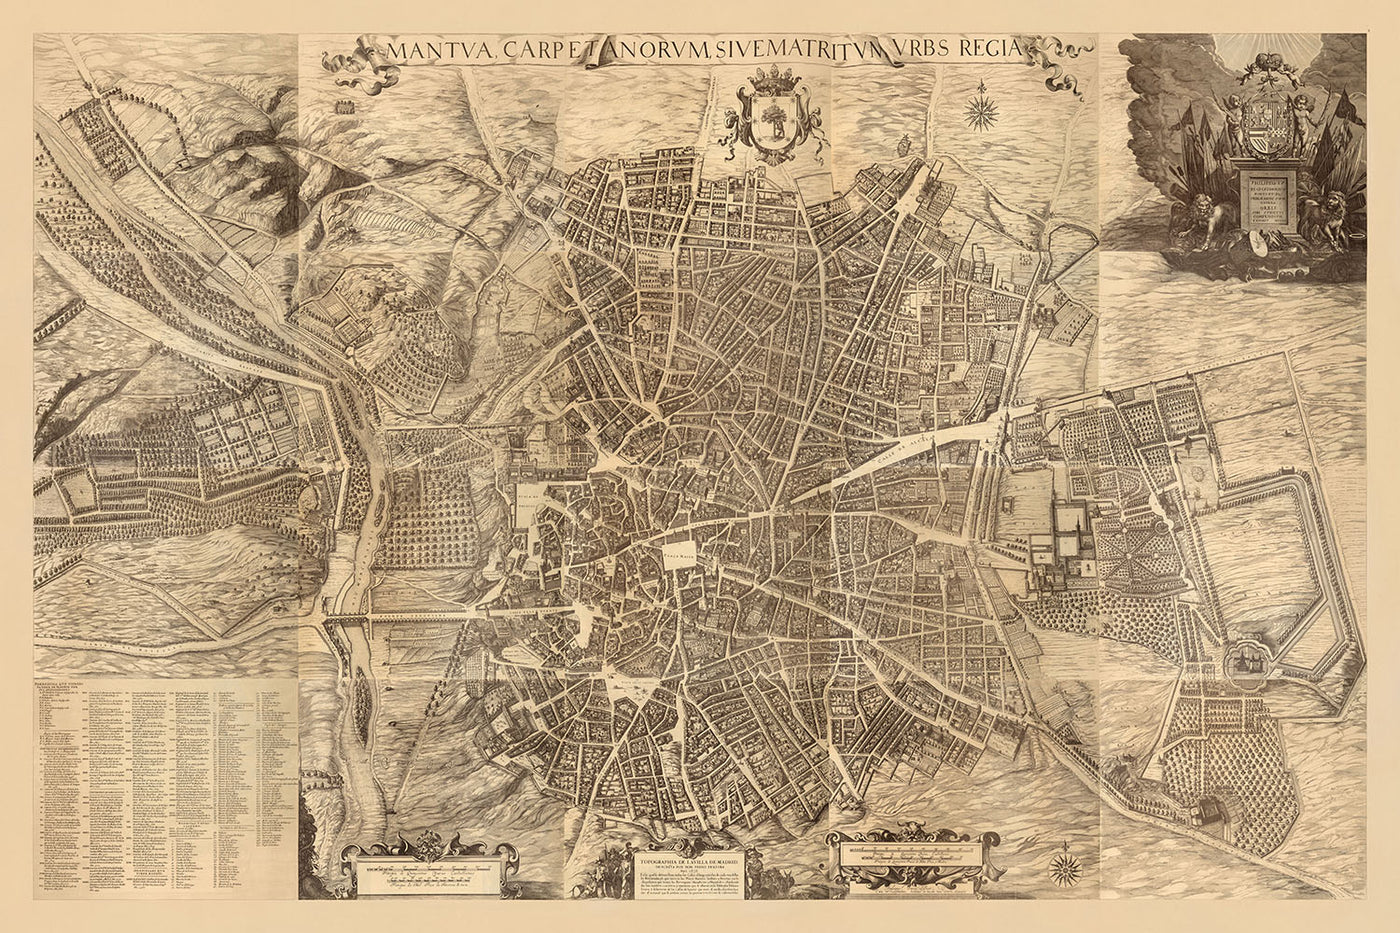 Alte Karte von Madrid von Teixeira, 1656: Plaza Mayor, Calle Mayor, Calle de Alcalá, große Kirchen, Klöster